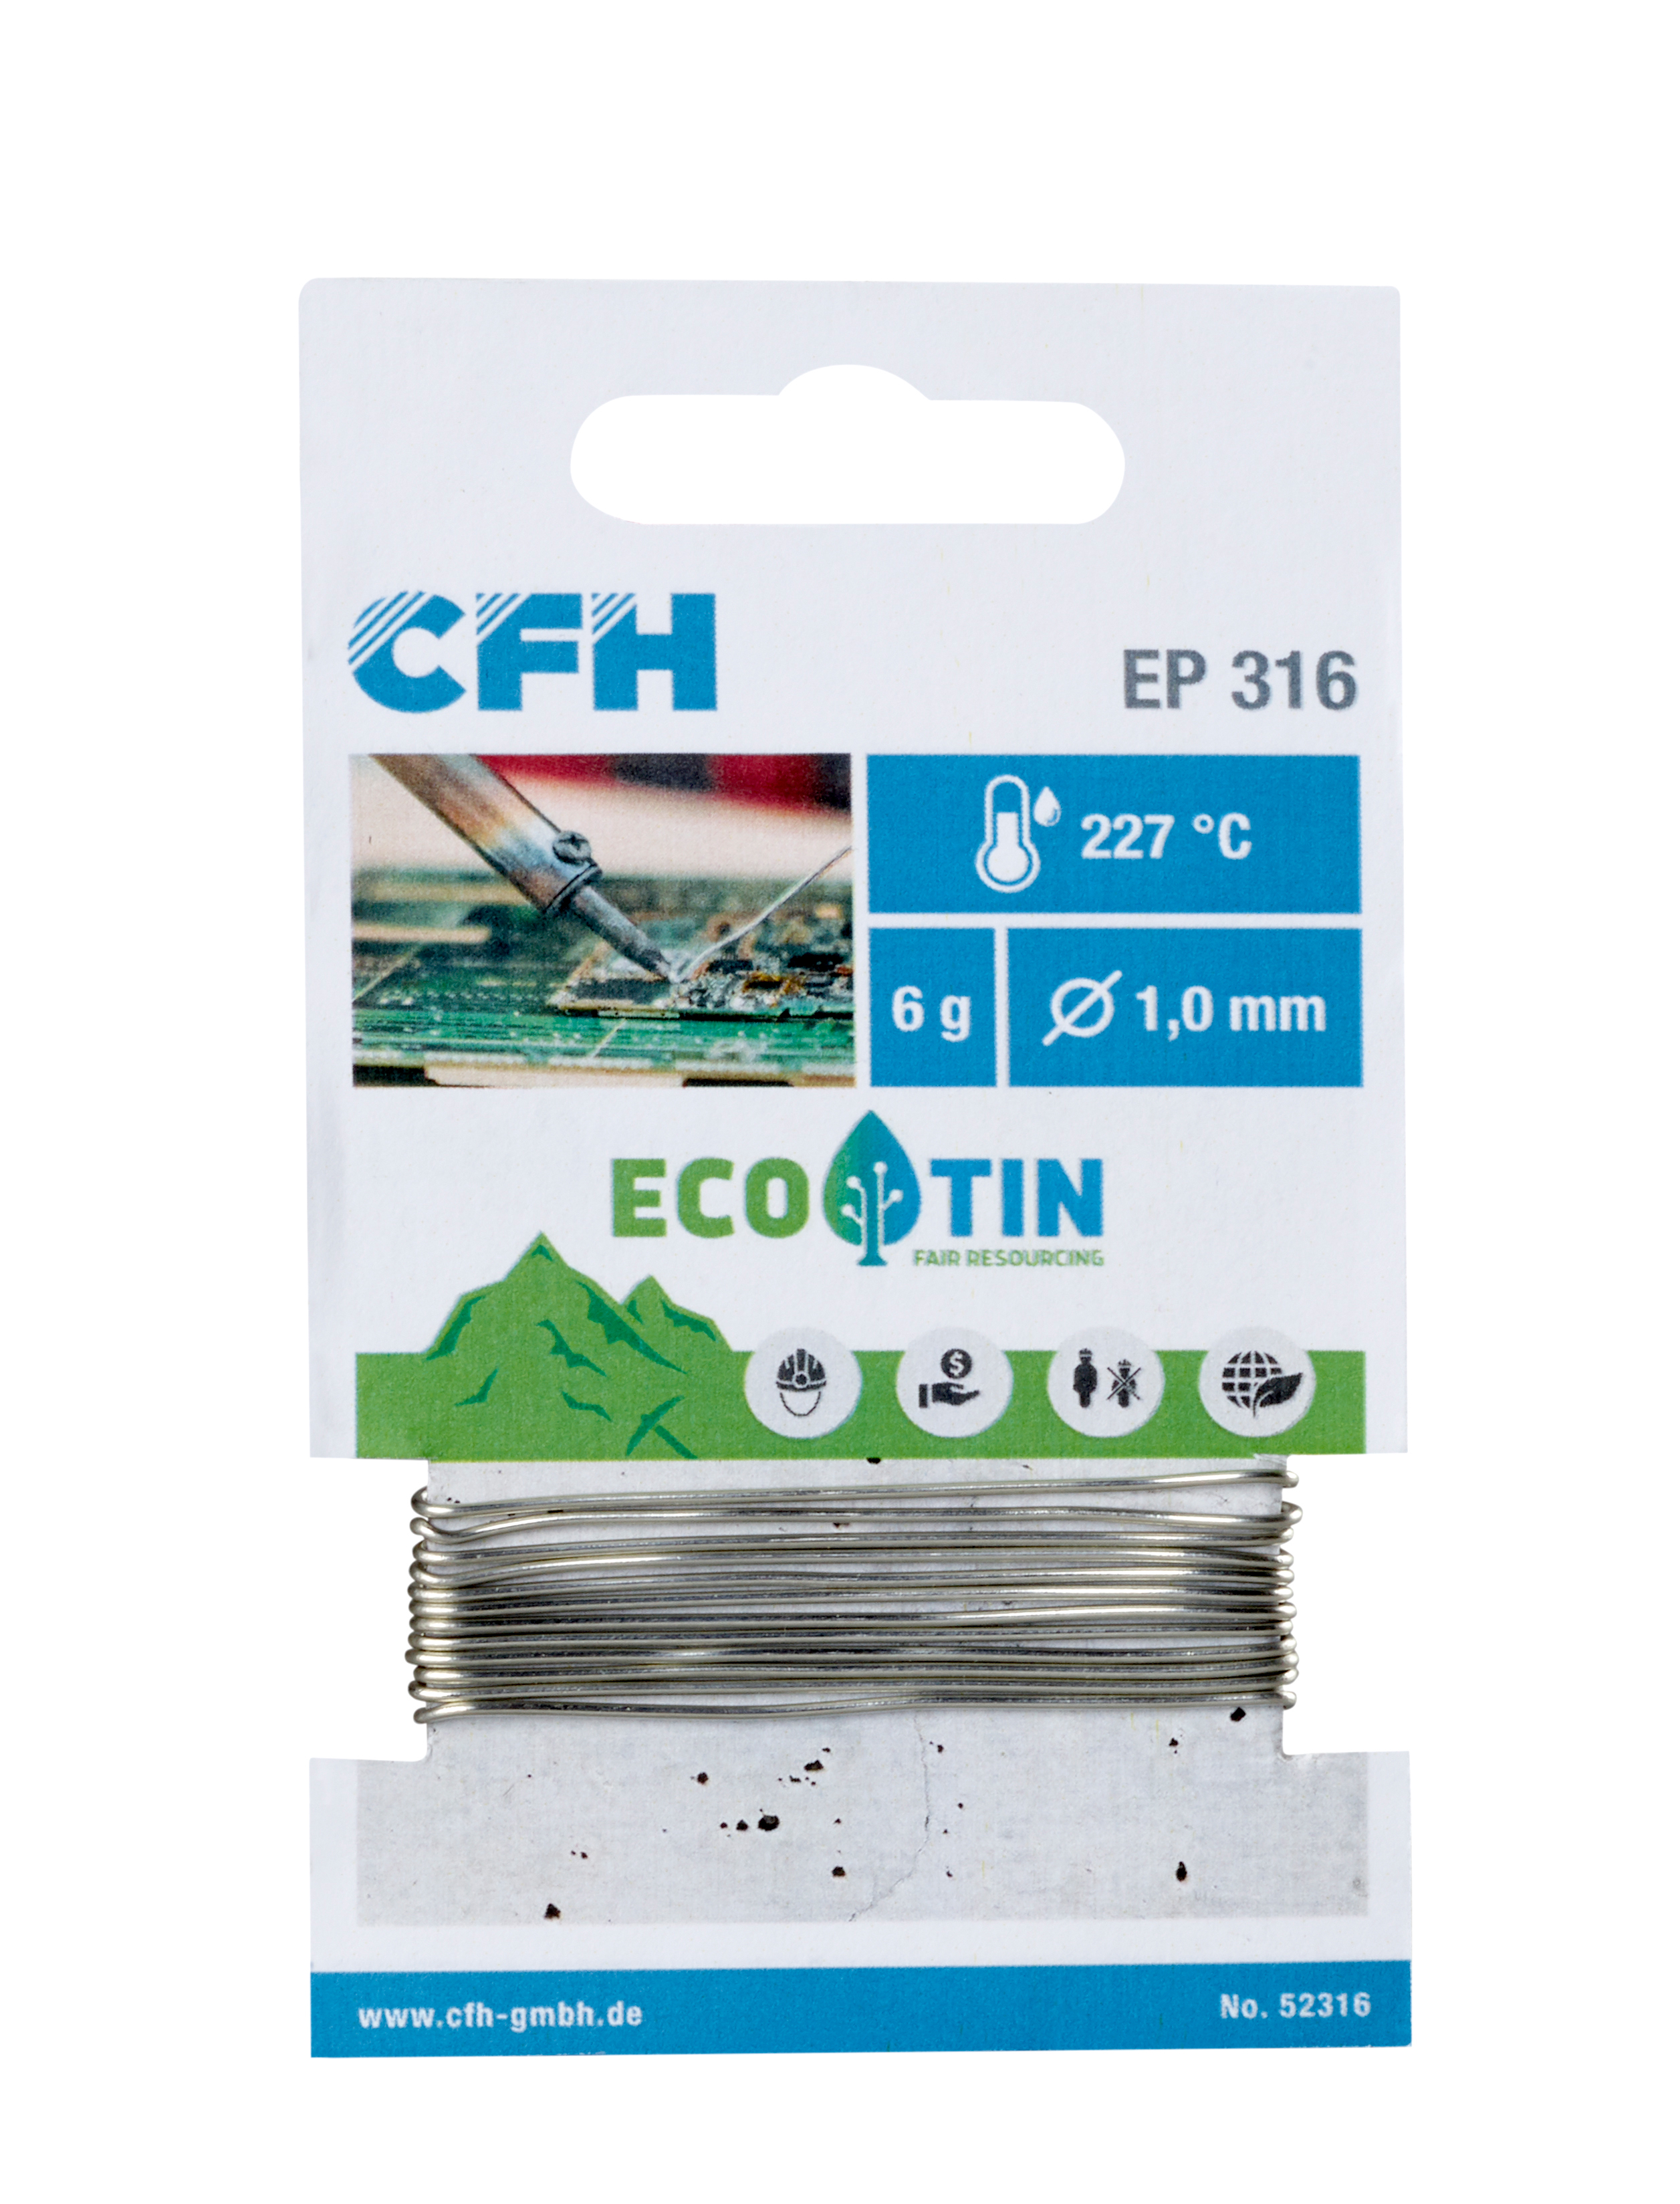 CFH Elektroniklot EL 316